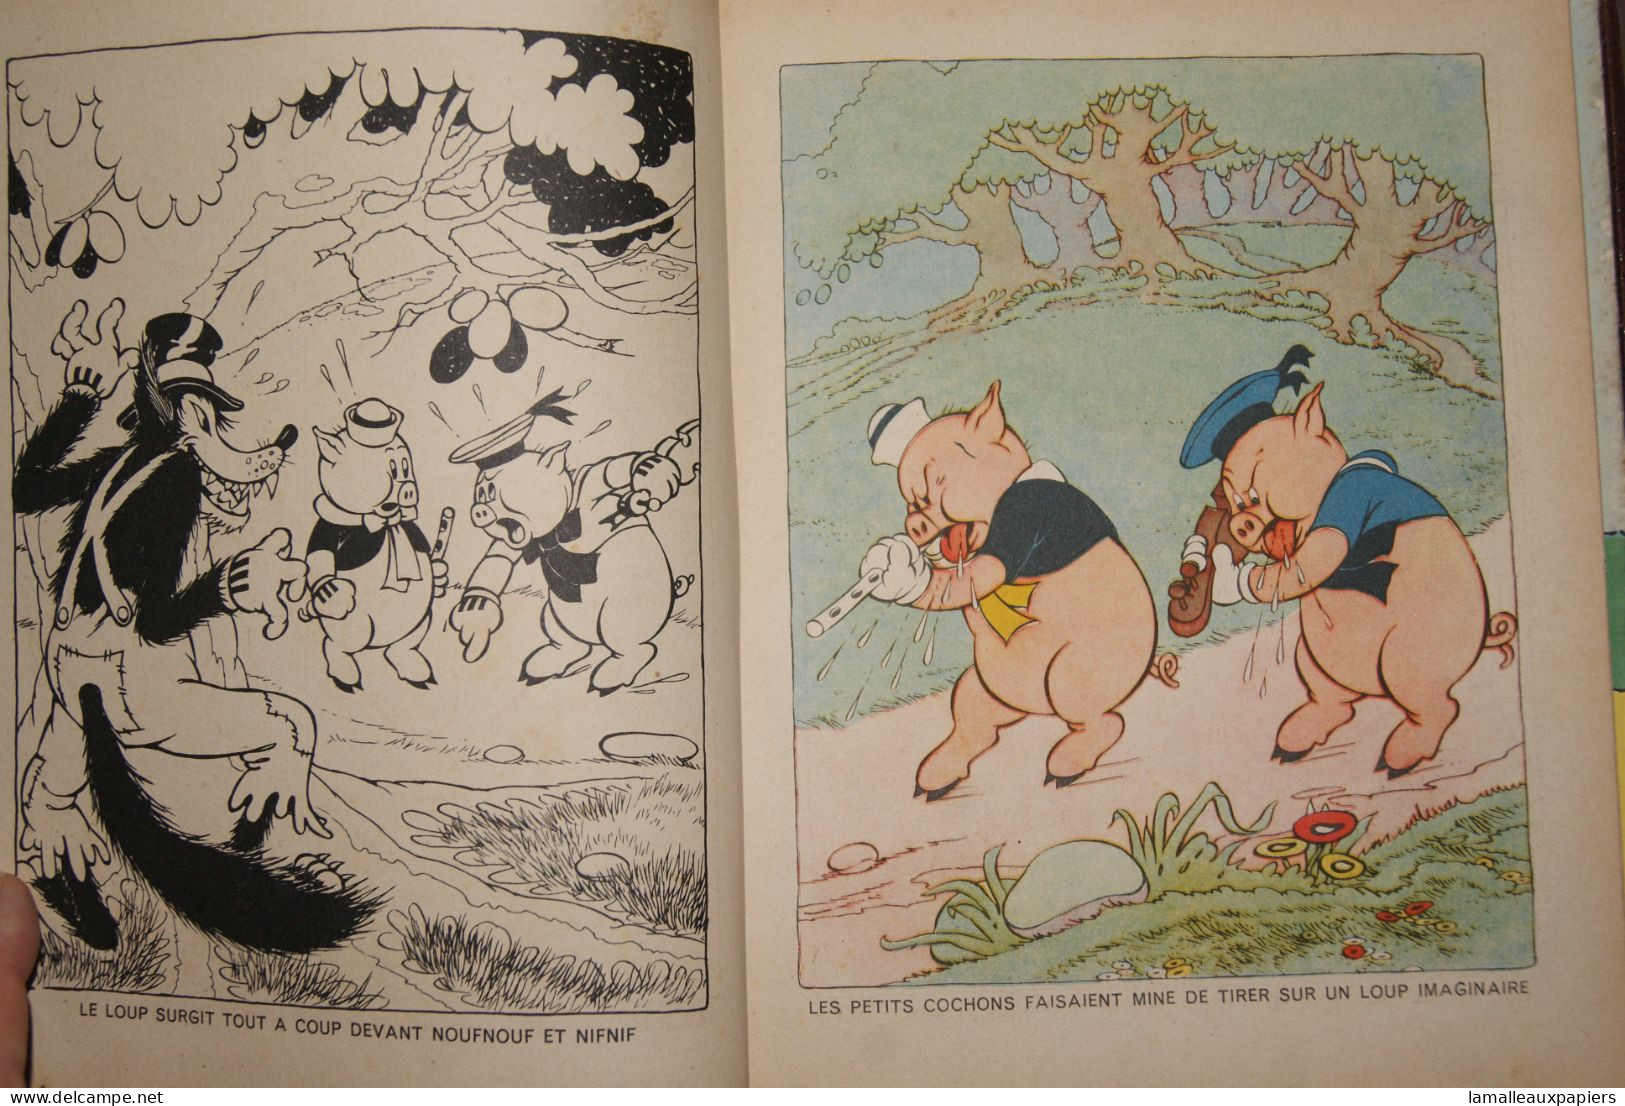 Les 3 Petits Cochons (Edition HACHETTE) 1934 - Disney